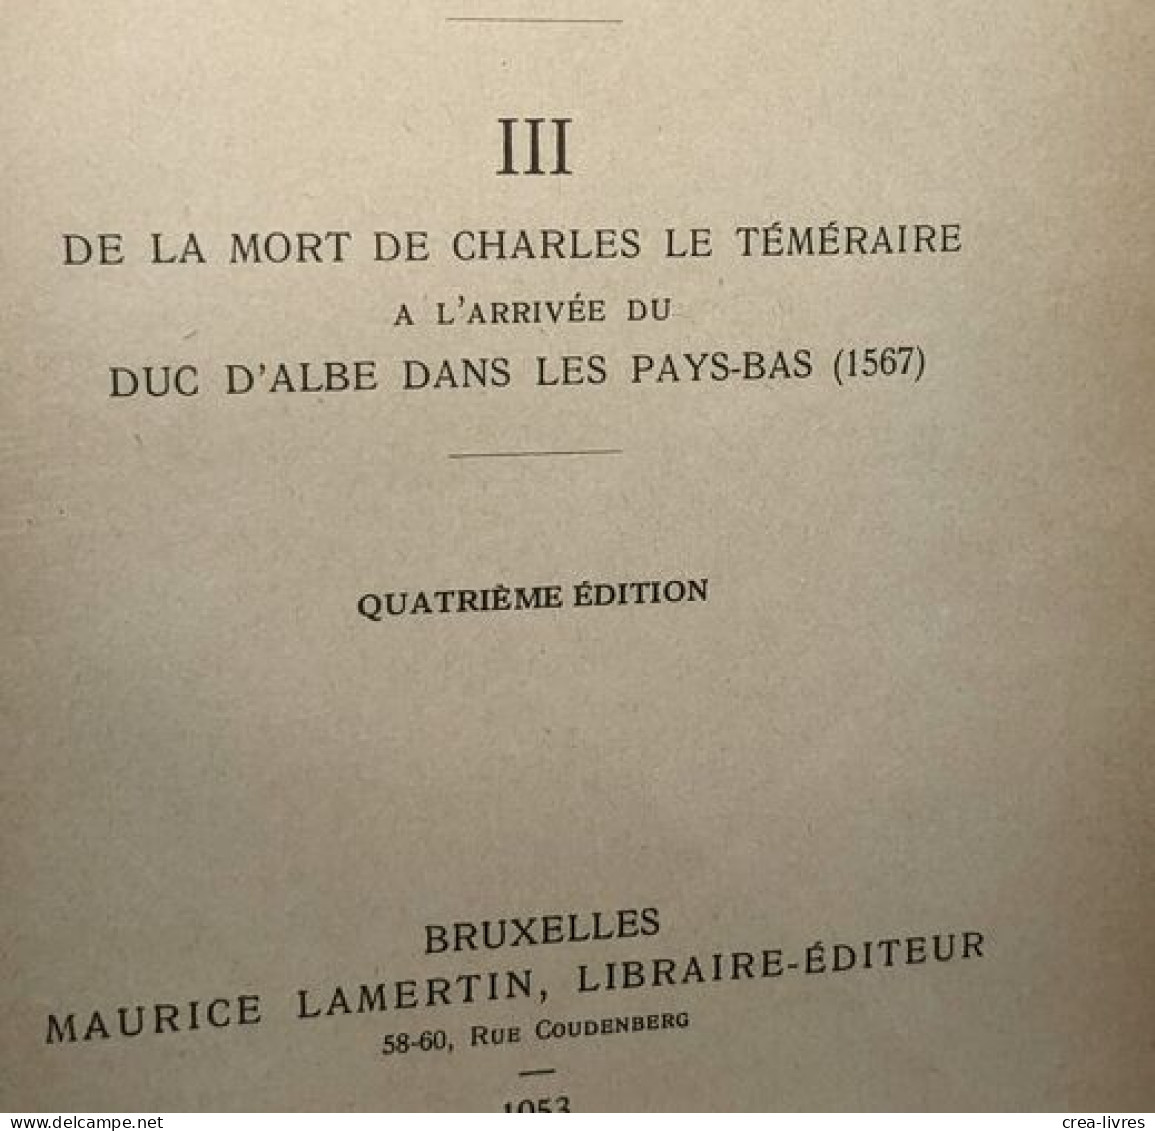 Histoire De La Belgique TOMES 1 (1929) 2 (1947) 3 (1953) 4 (1927) 5 (1921) Et 7 (1948) (tome 6 Manquant) - - Geschichte